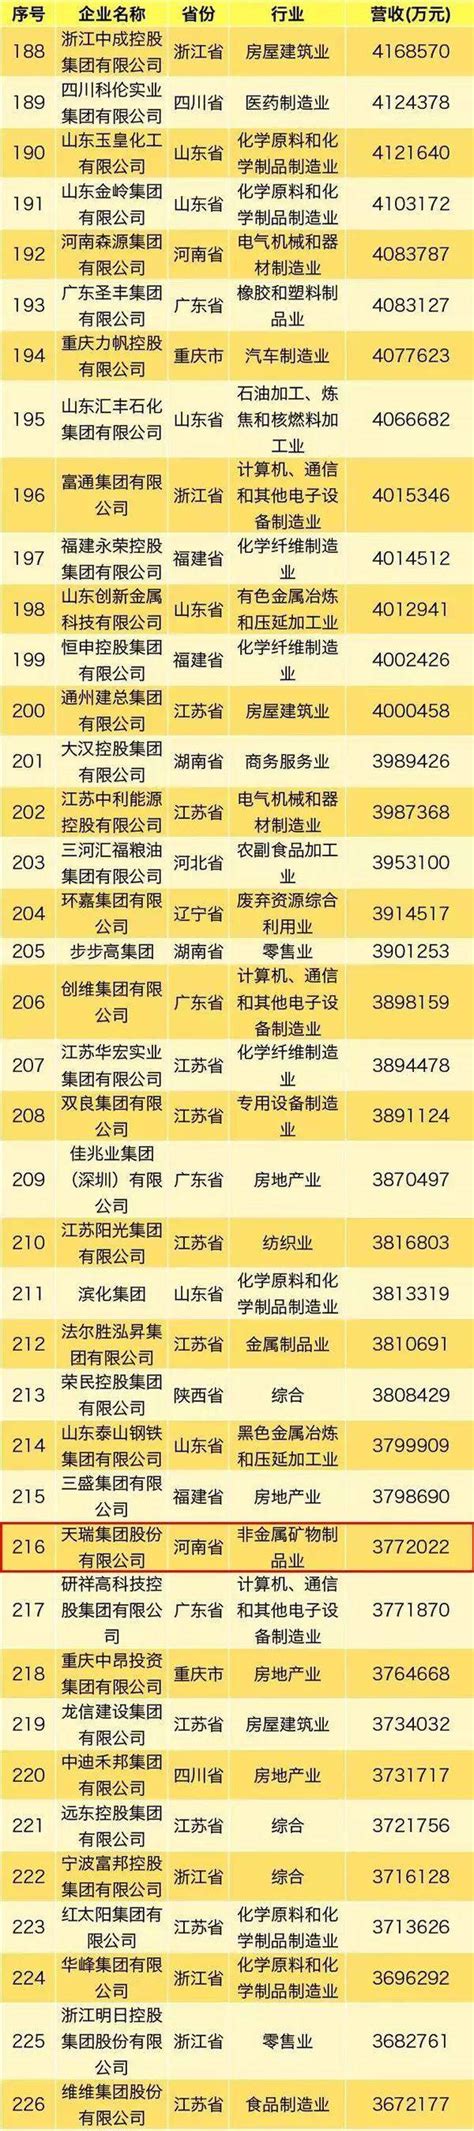 汝州这家企业上2019中国民营企业500强榜单 - 奇点